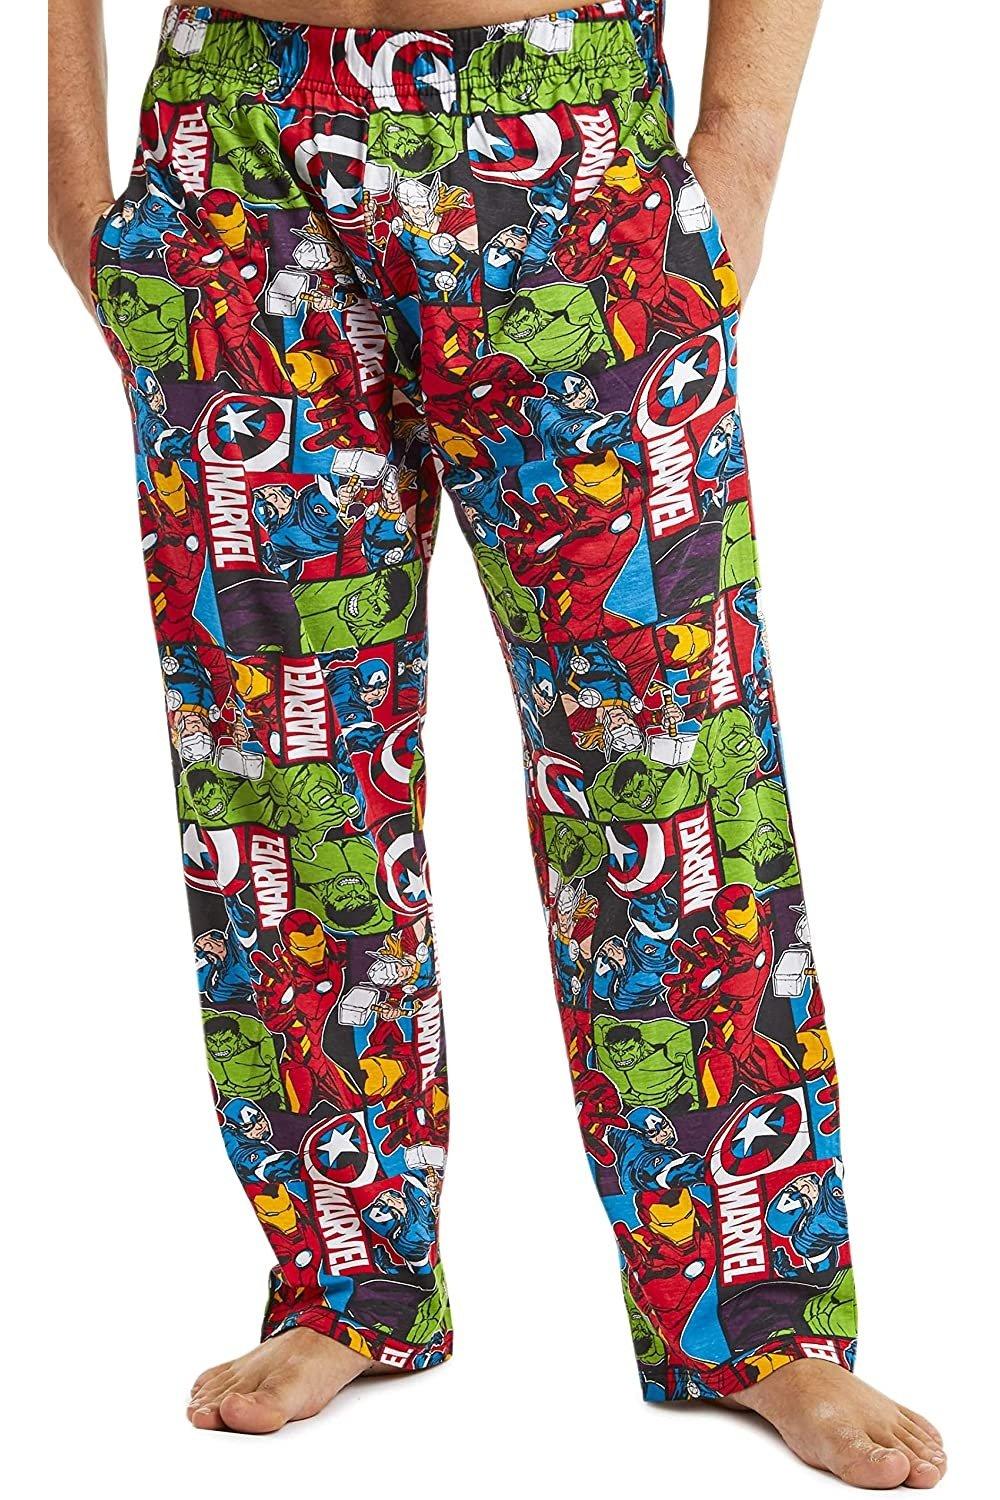 Брюки Avengers Lounge с принтом по всей поверхности Disney, мультиколор брюки от пижамы declan l бежевый